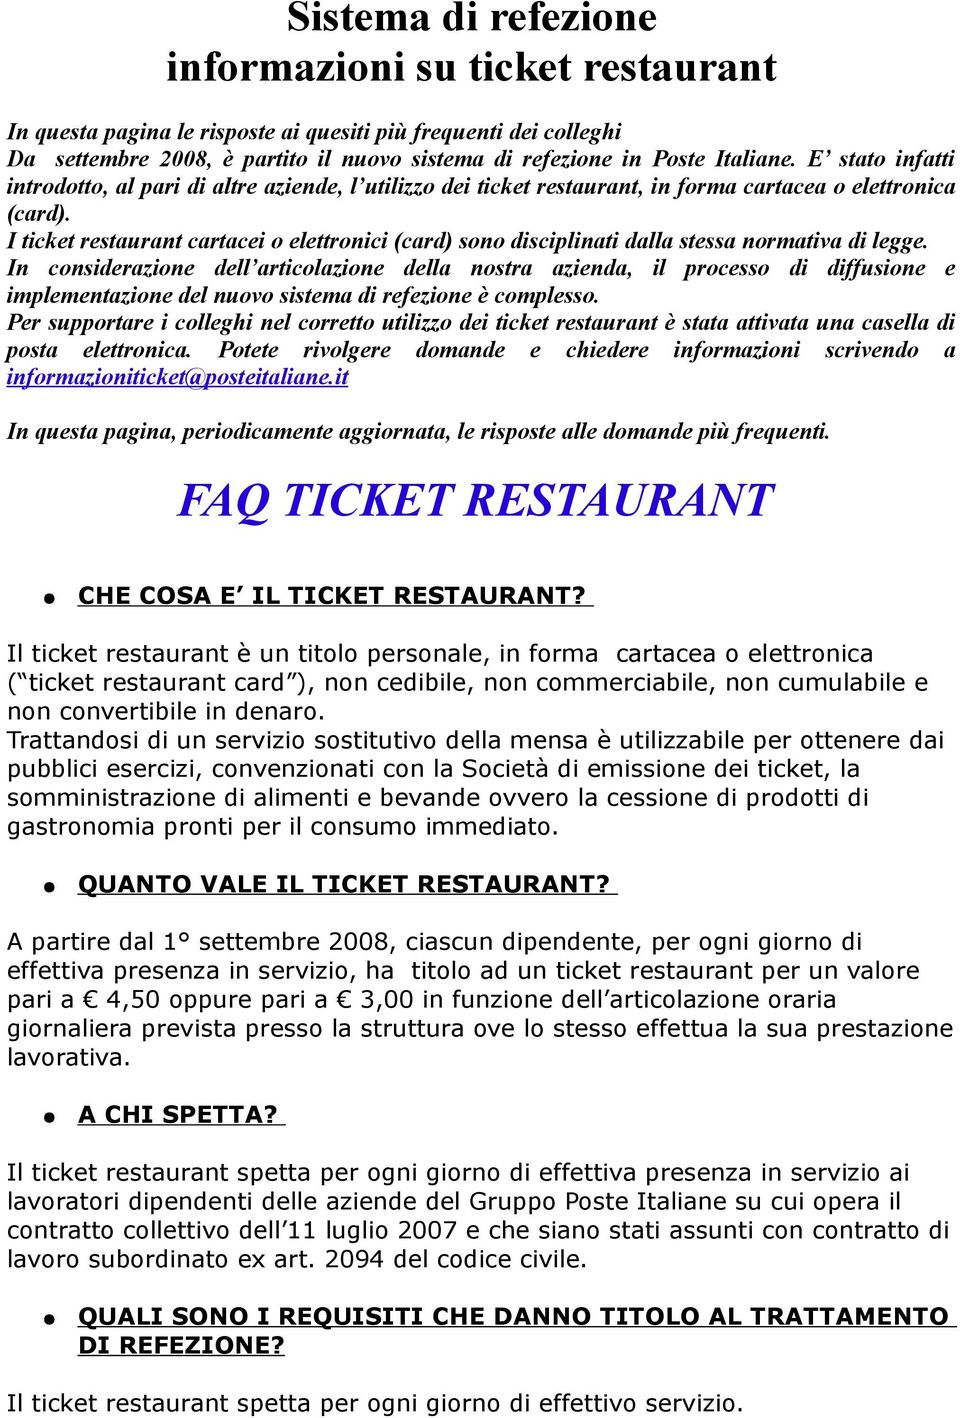 I ticket restaurant cartacei o elettronici (card) sono disciplinati dalla stessa normativa di legge.